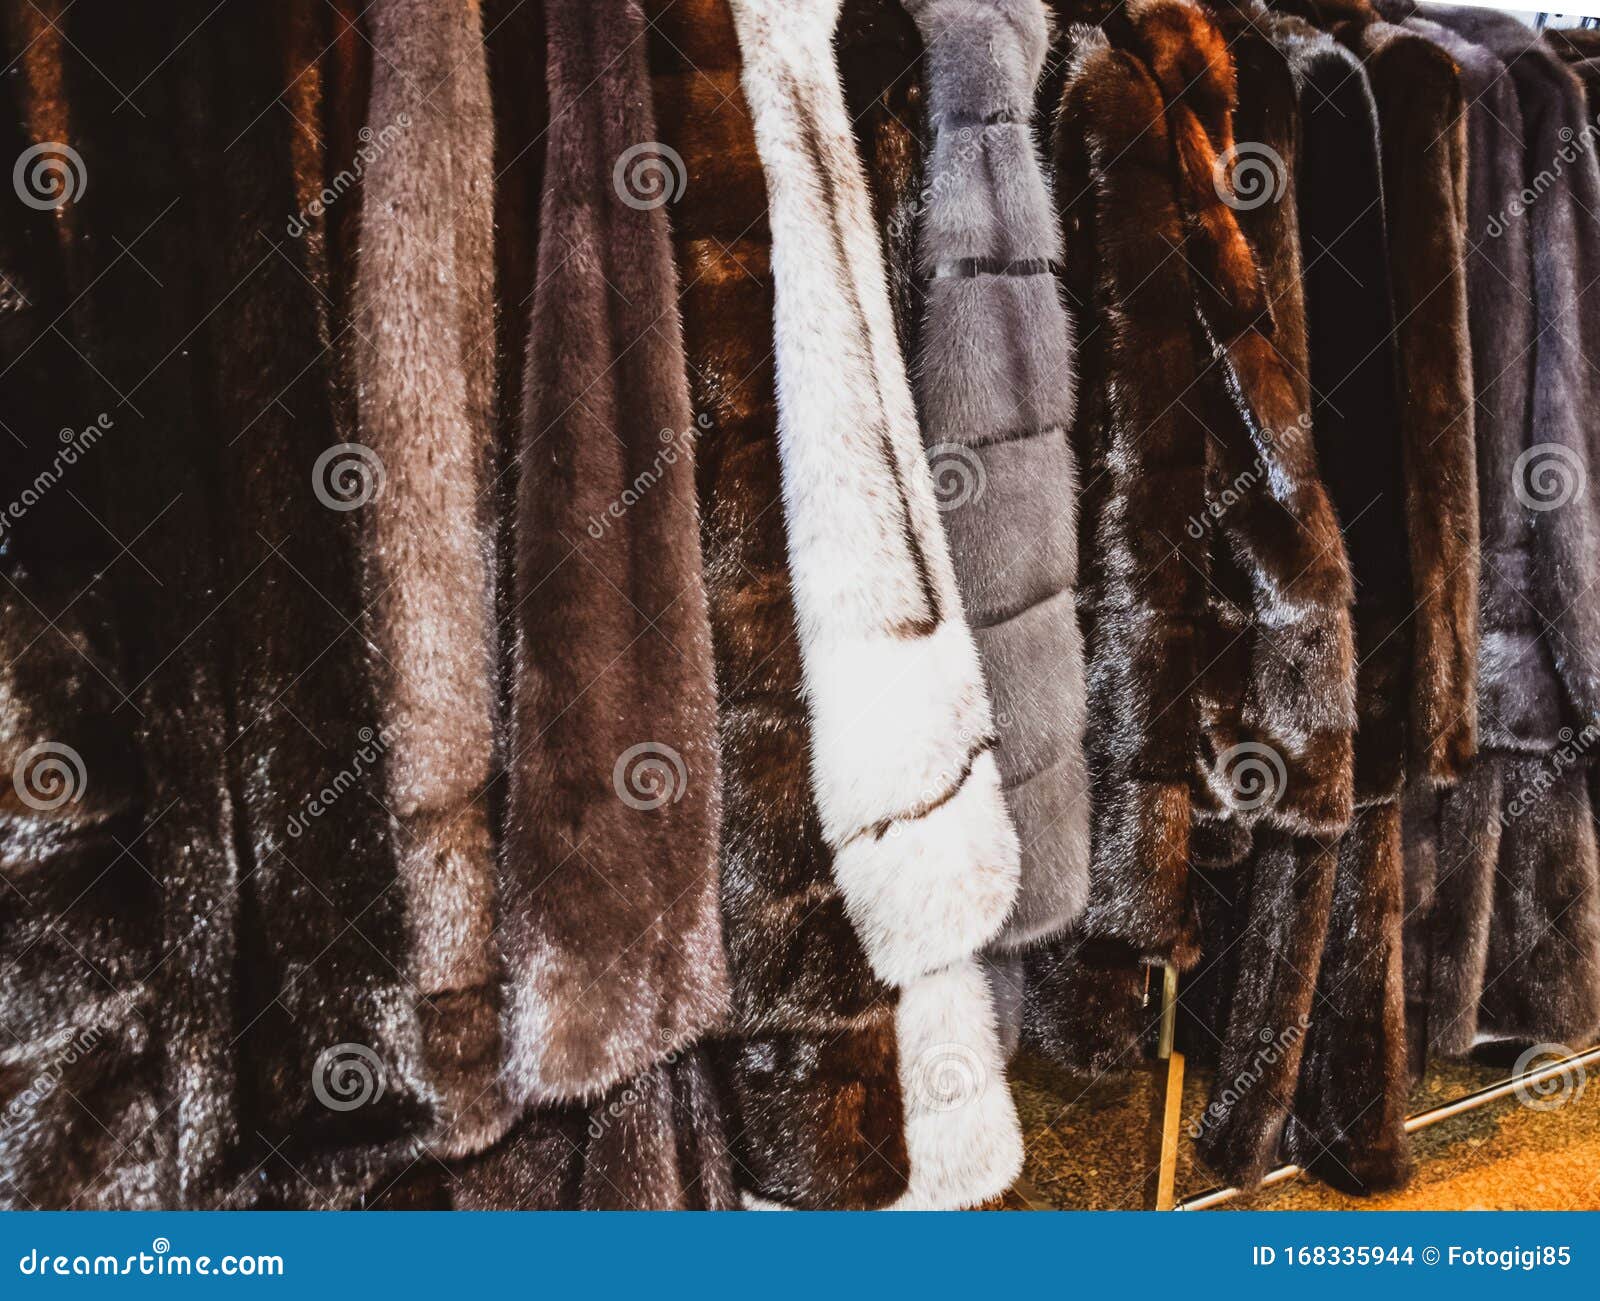 Fur Coats on Hangers. Fur Store Stock Photo - Image of hangers, market ...